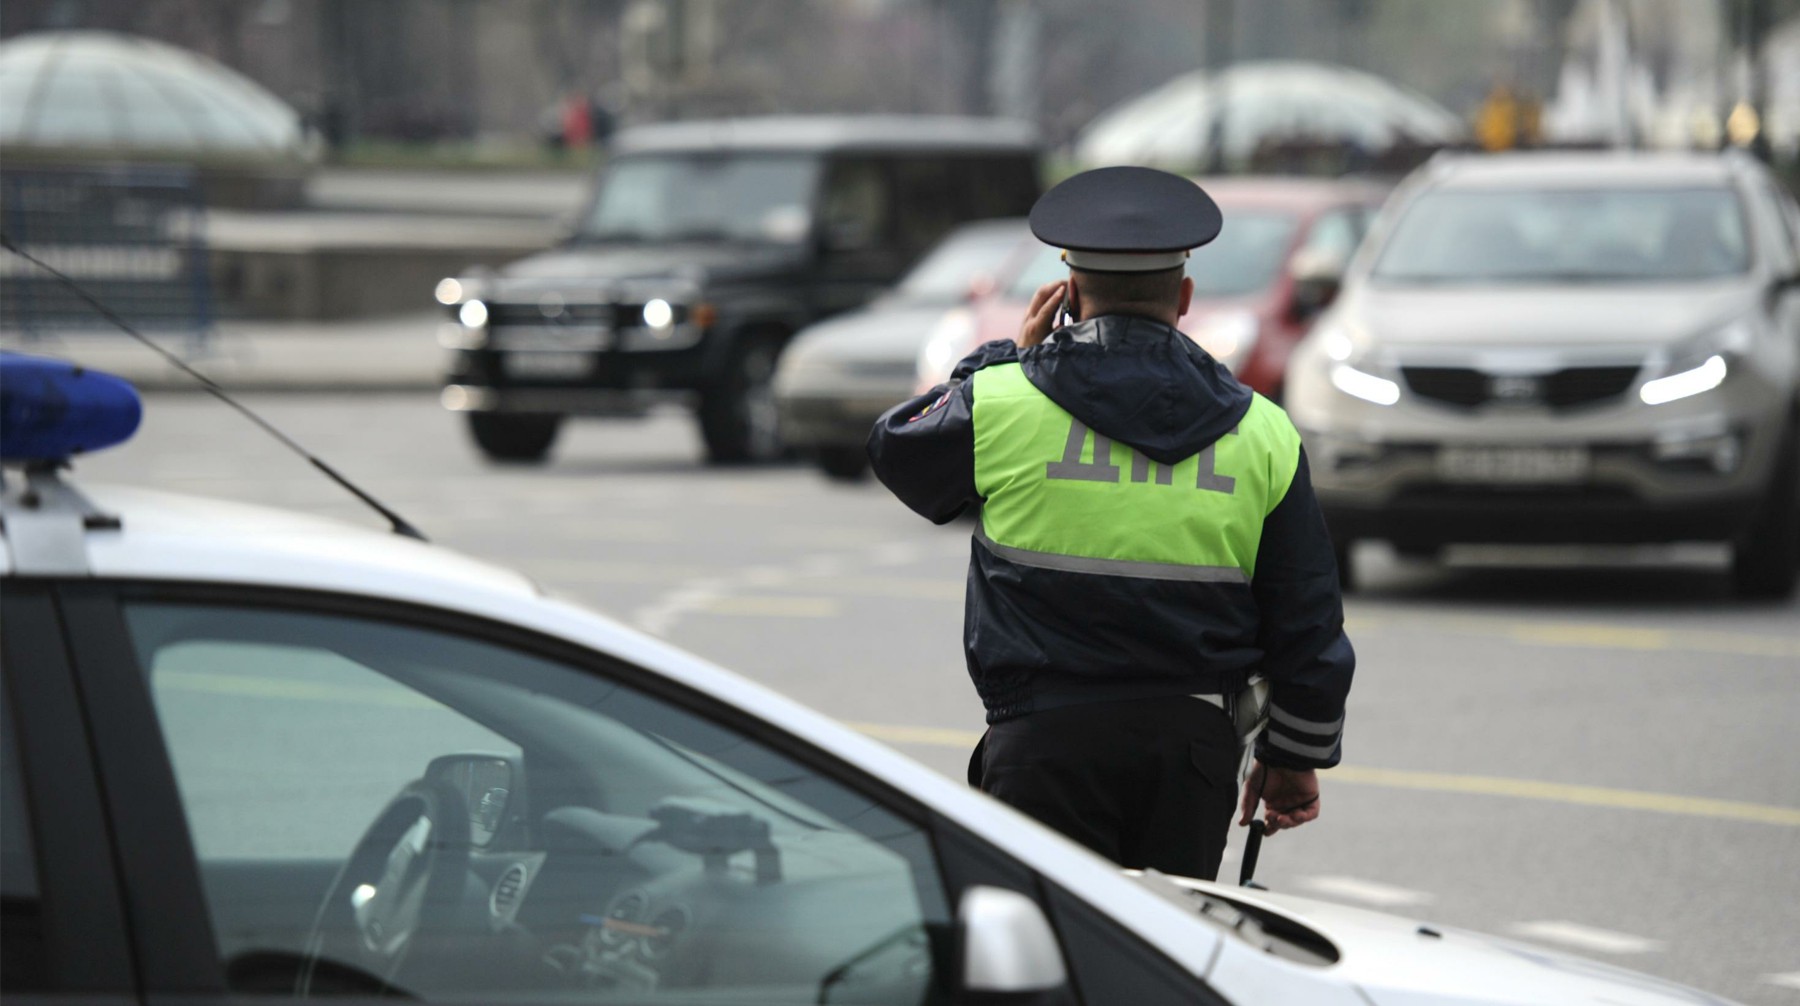 Dailystorm - Атака лопатой: в Якутии пьяный депутат избил полицейского